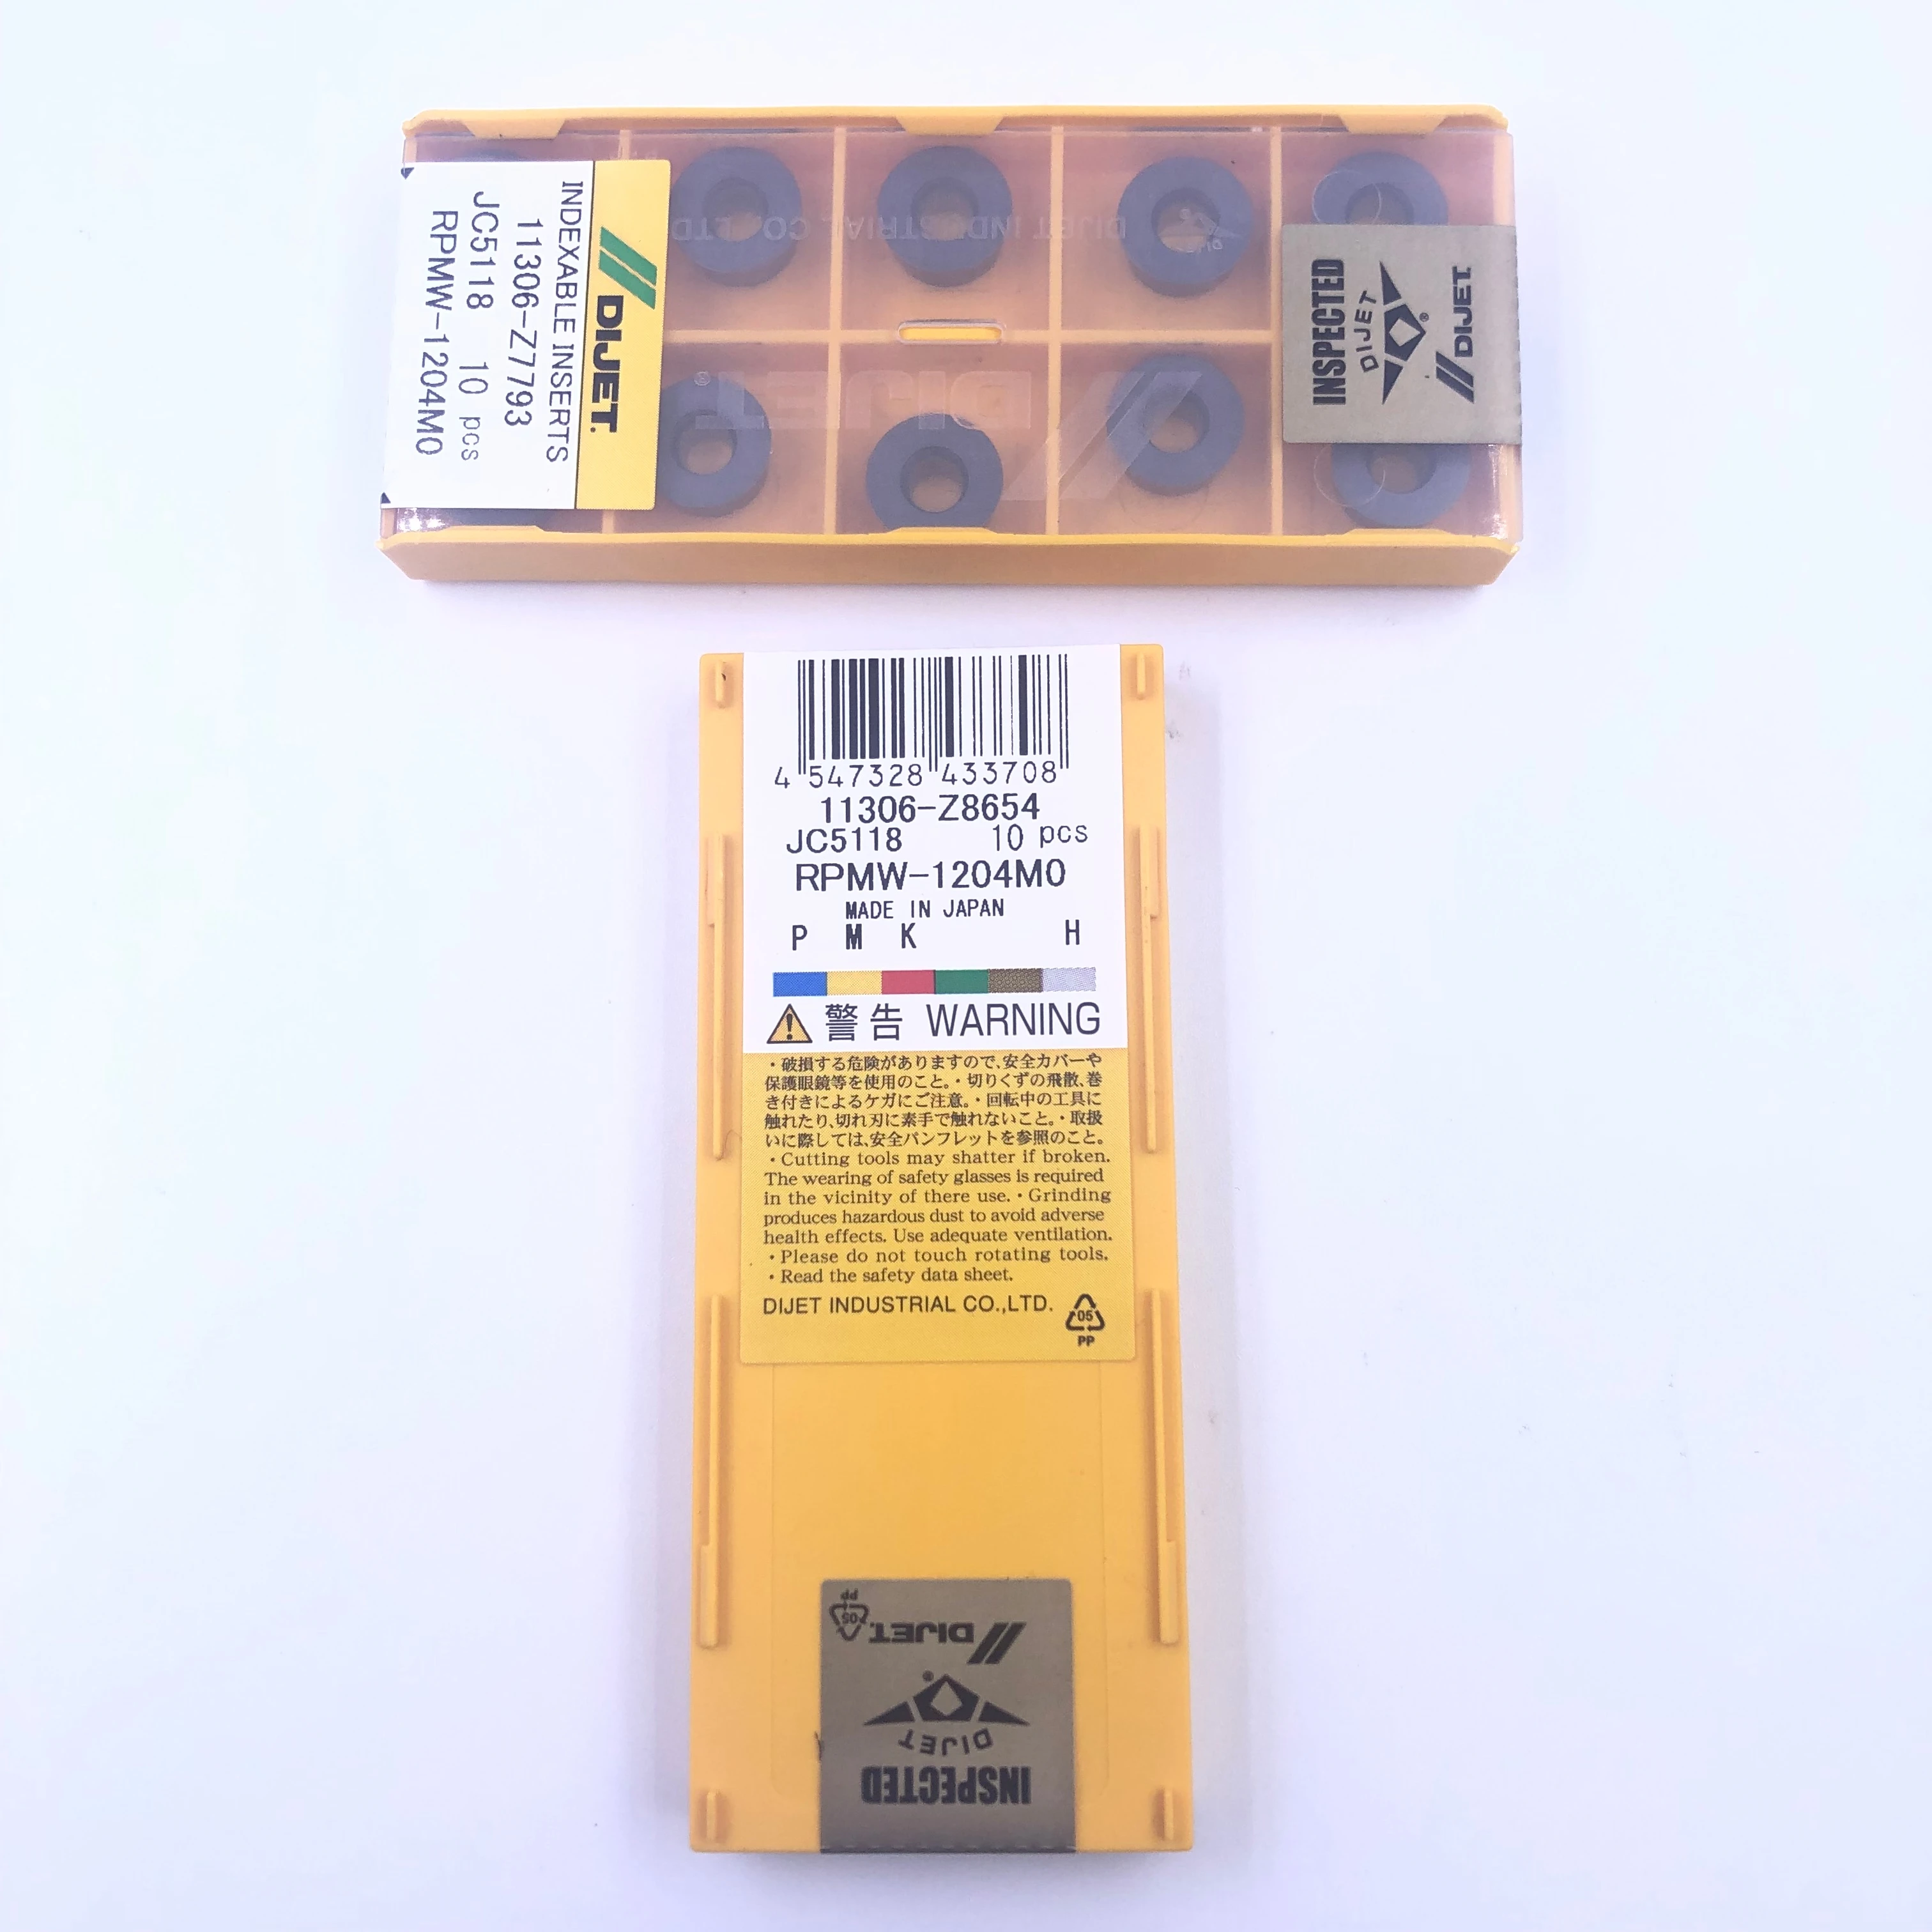 RPMW1204MO JC5118 Япония dijet вставки карбида фрезерные вставки токарные инструменты 10 шт./лот